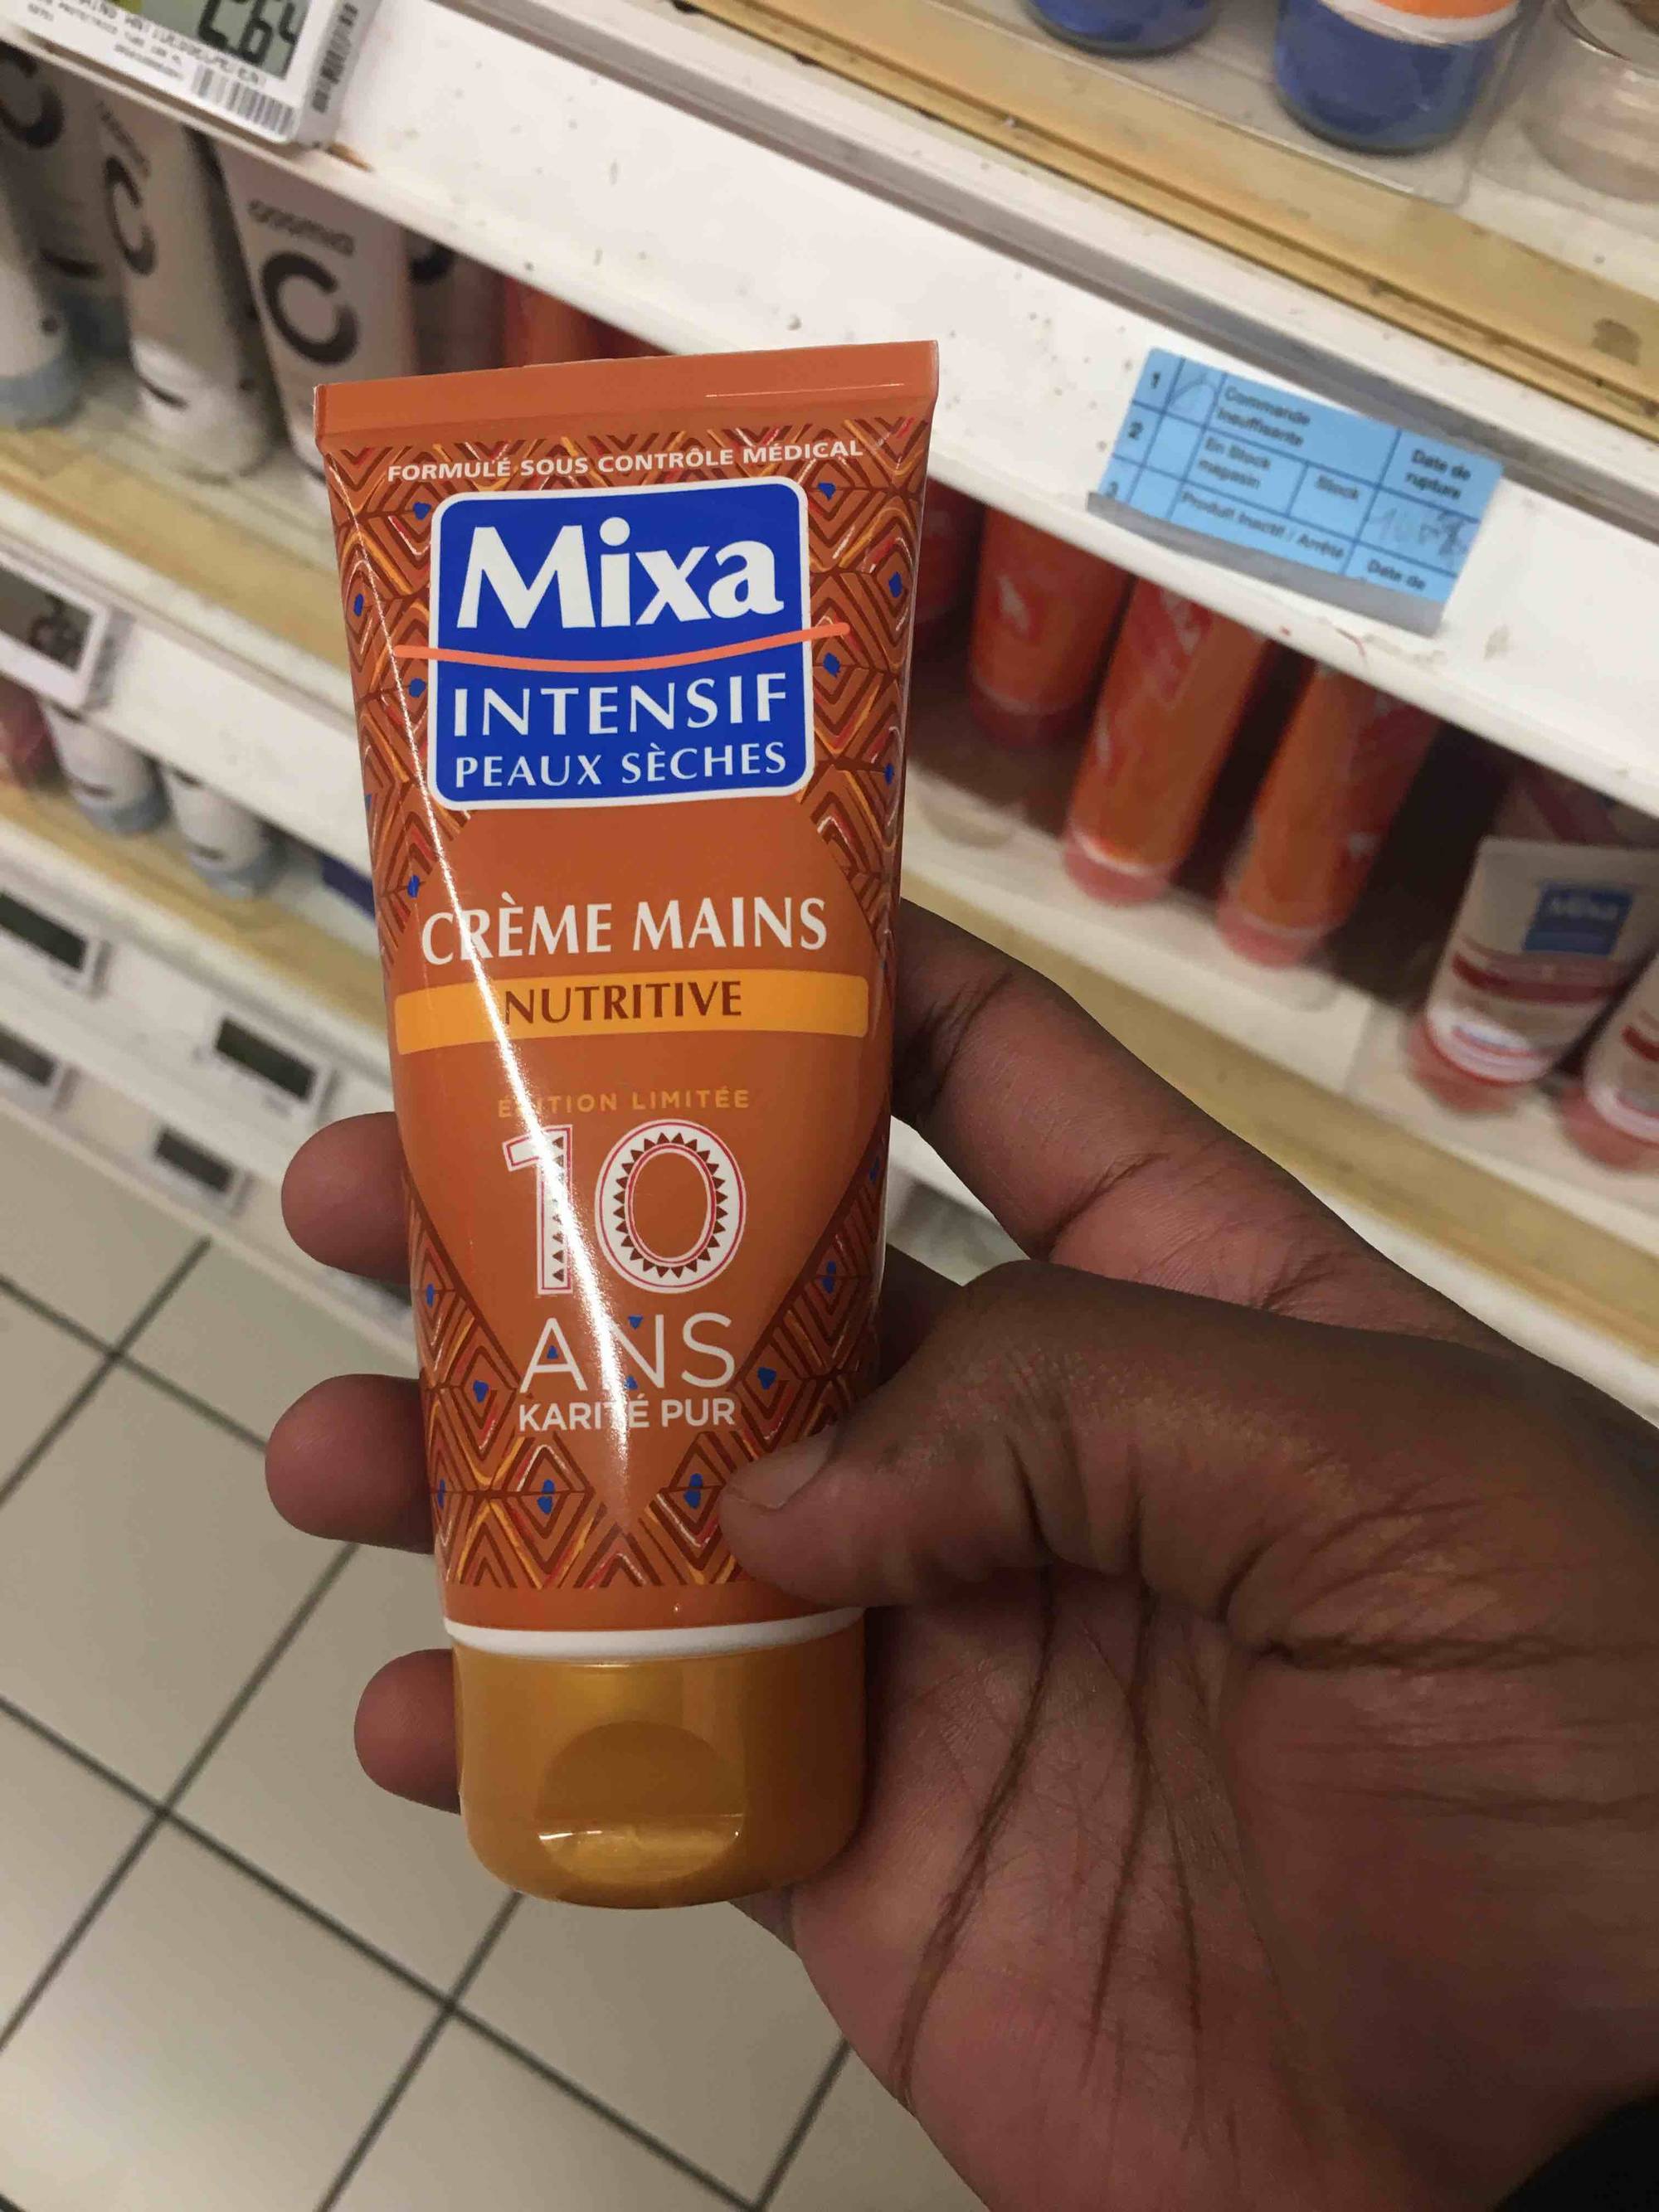 Composition MIXA Intensif peaux sèches - Crème mains nutritive